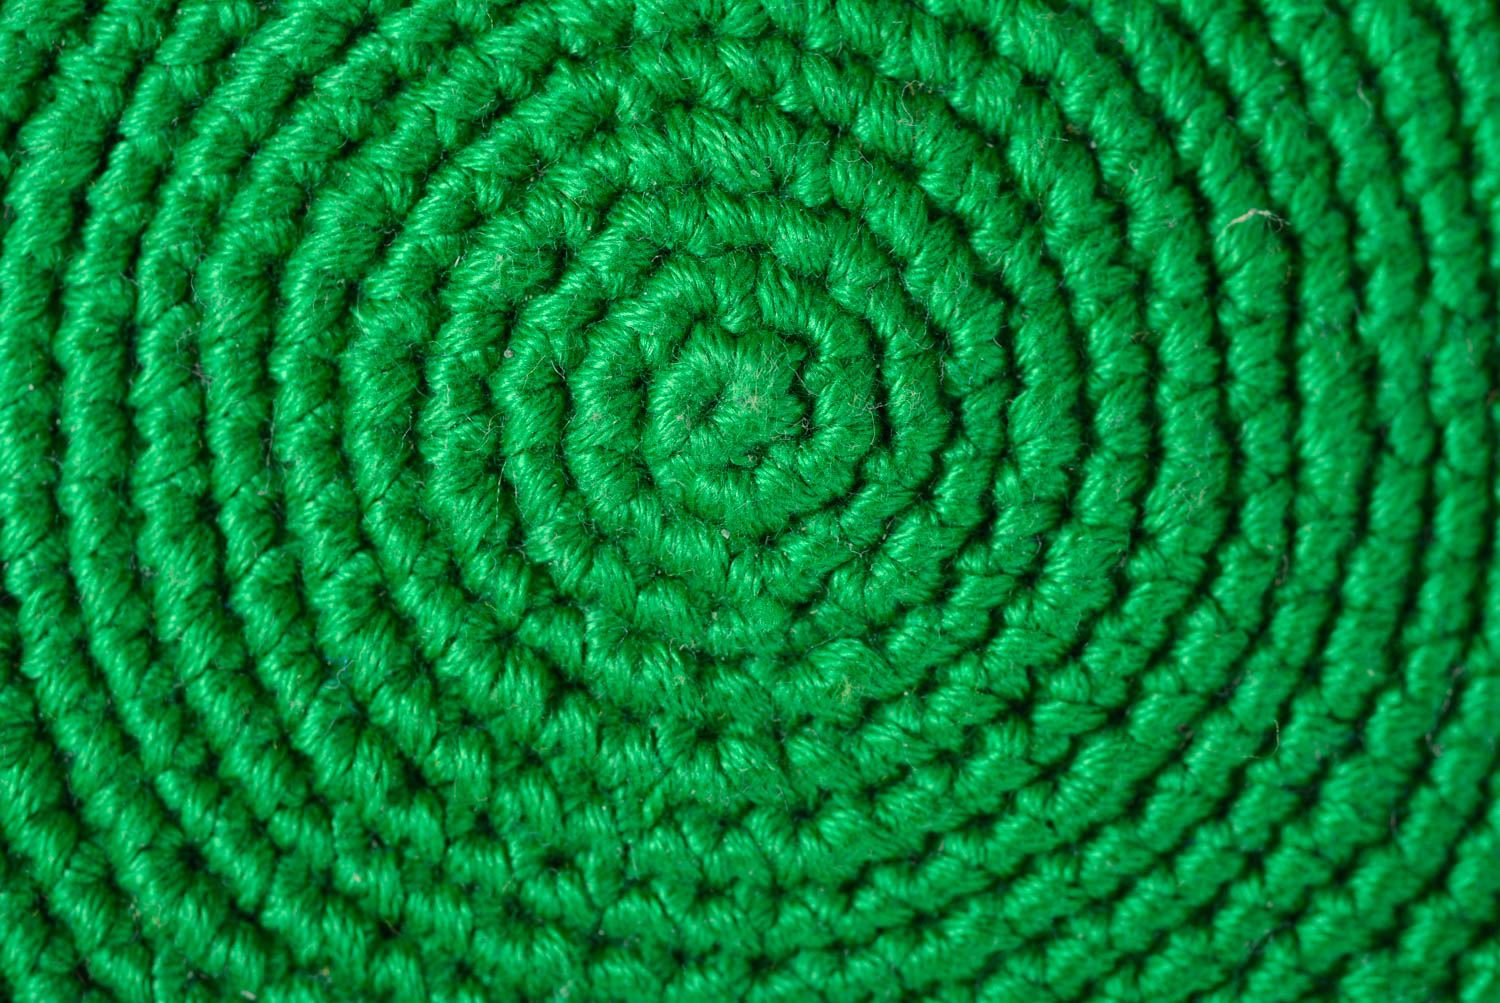 Dessous-de-verre au crochet fait main Déco cuisine en coton grenouille verte photo 4